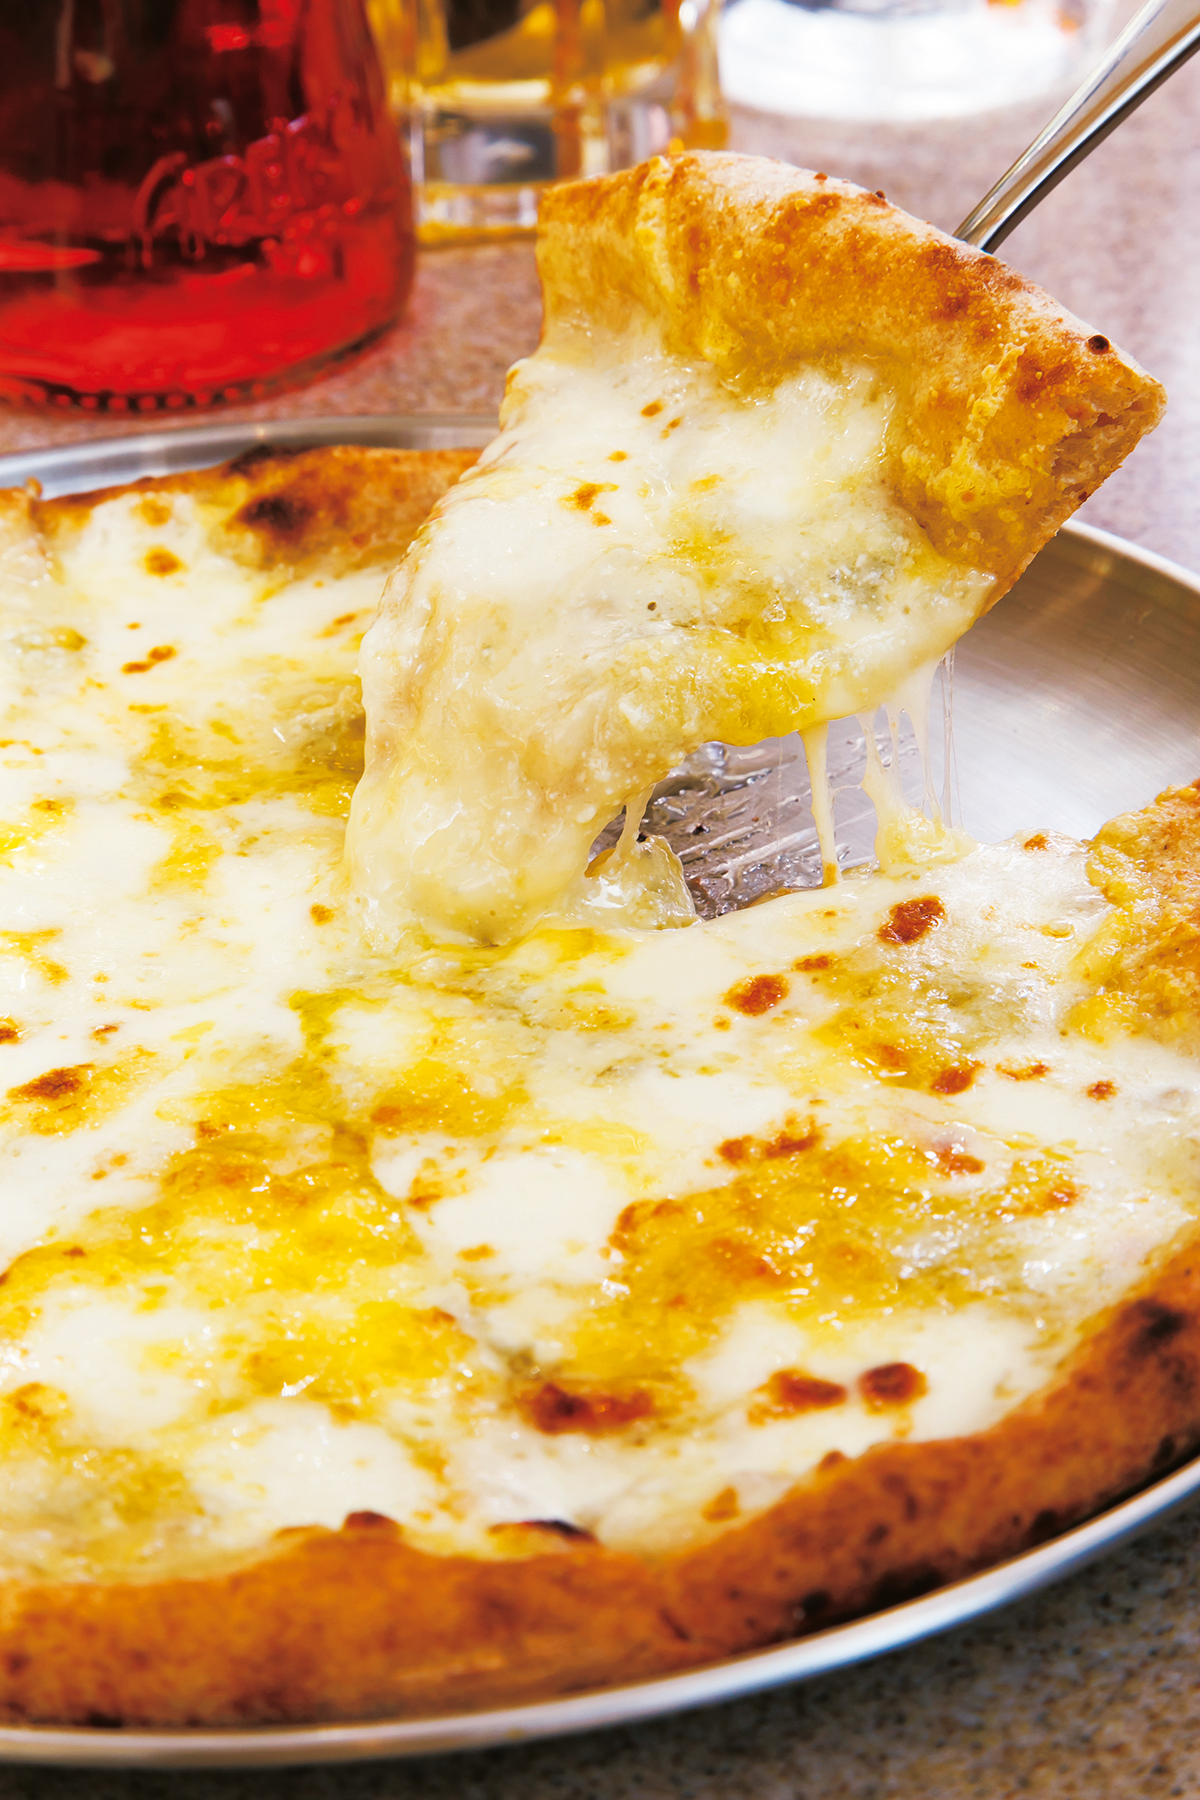 クレイジーチンクエフォルマッジ5500円<br />
ゴルゴンゾーラ、タレッジオ、ストラッキーノなど５種類の最高級チーズをふんだんに使用。有機アプリコットジャムか北海道産ハチミツがつく